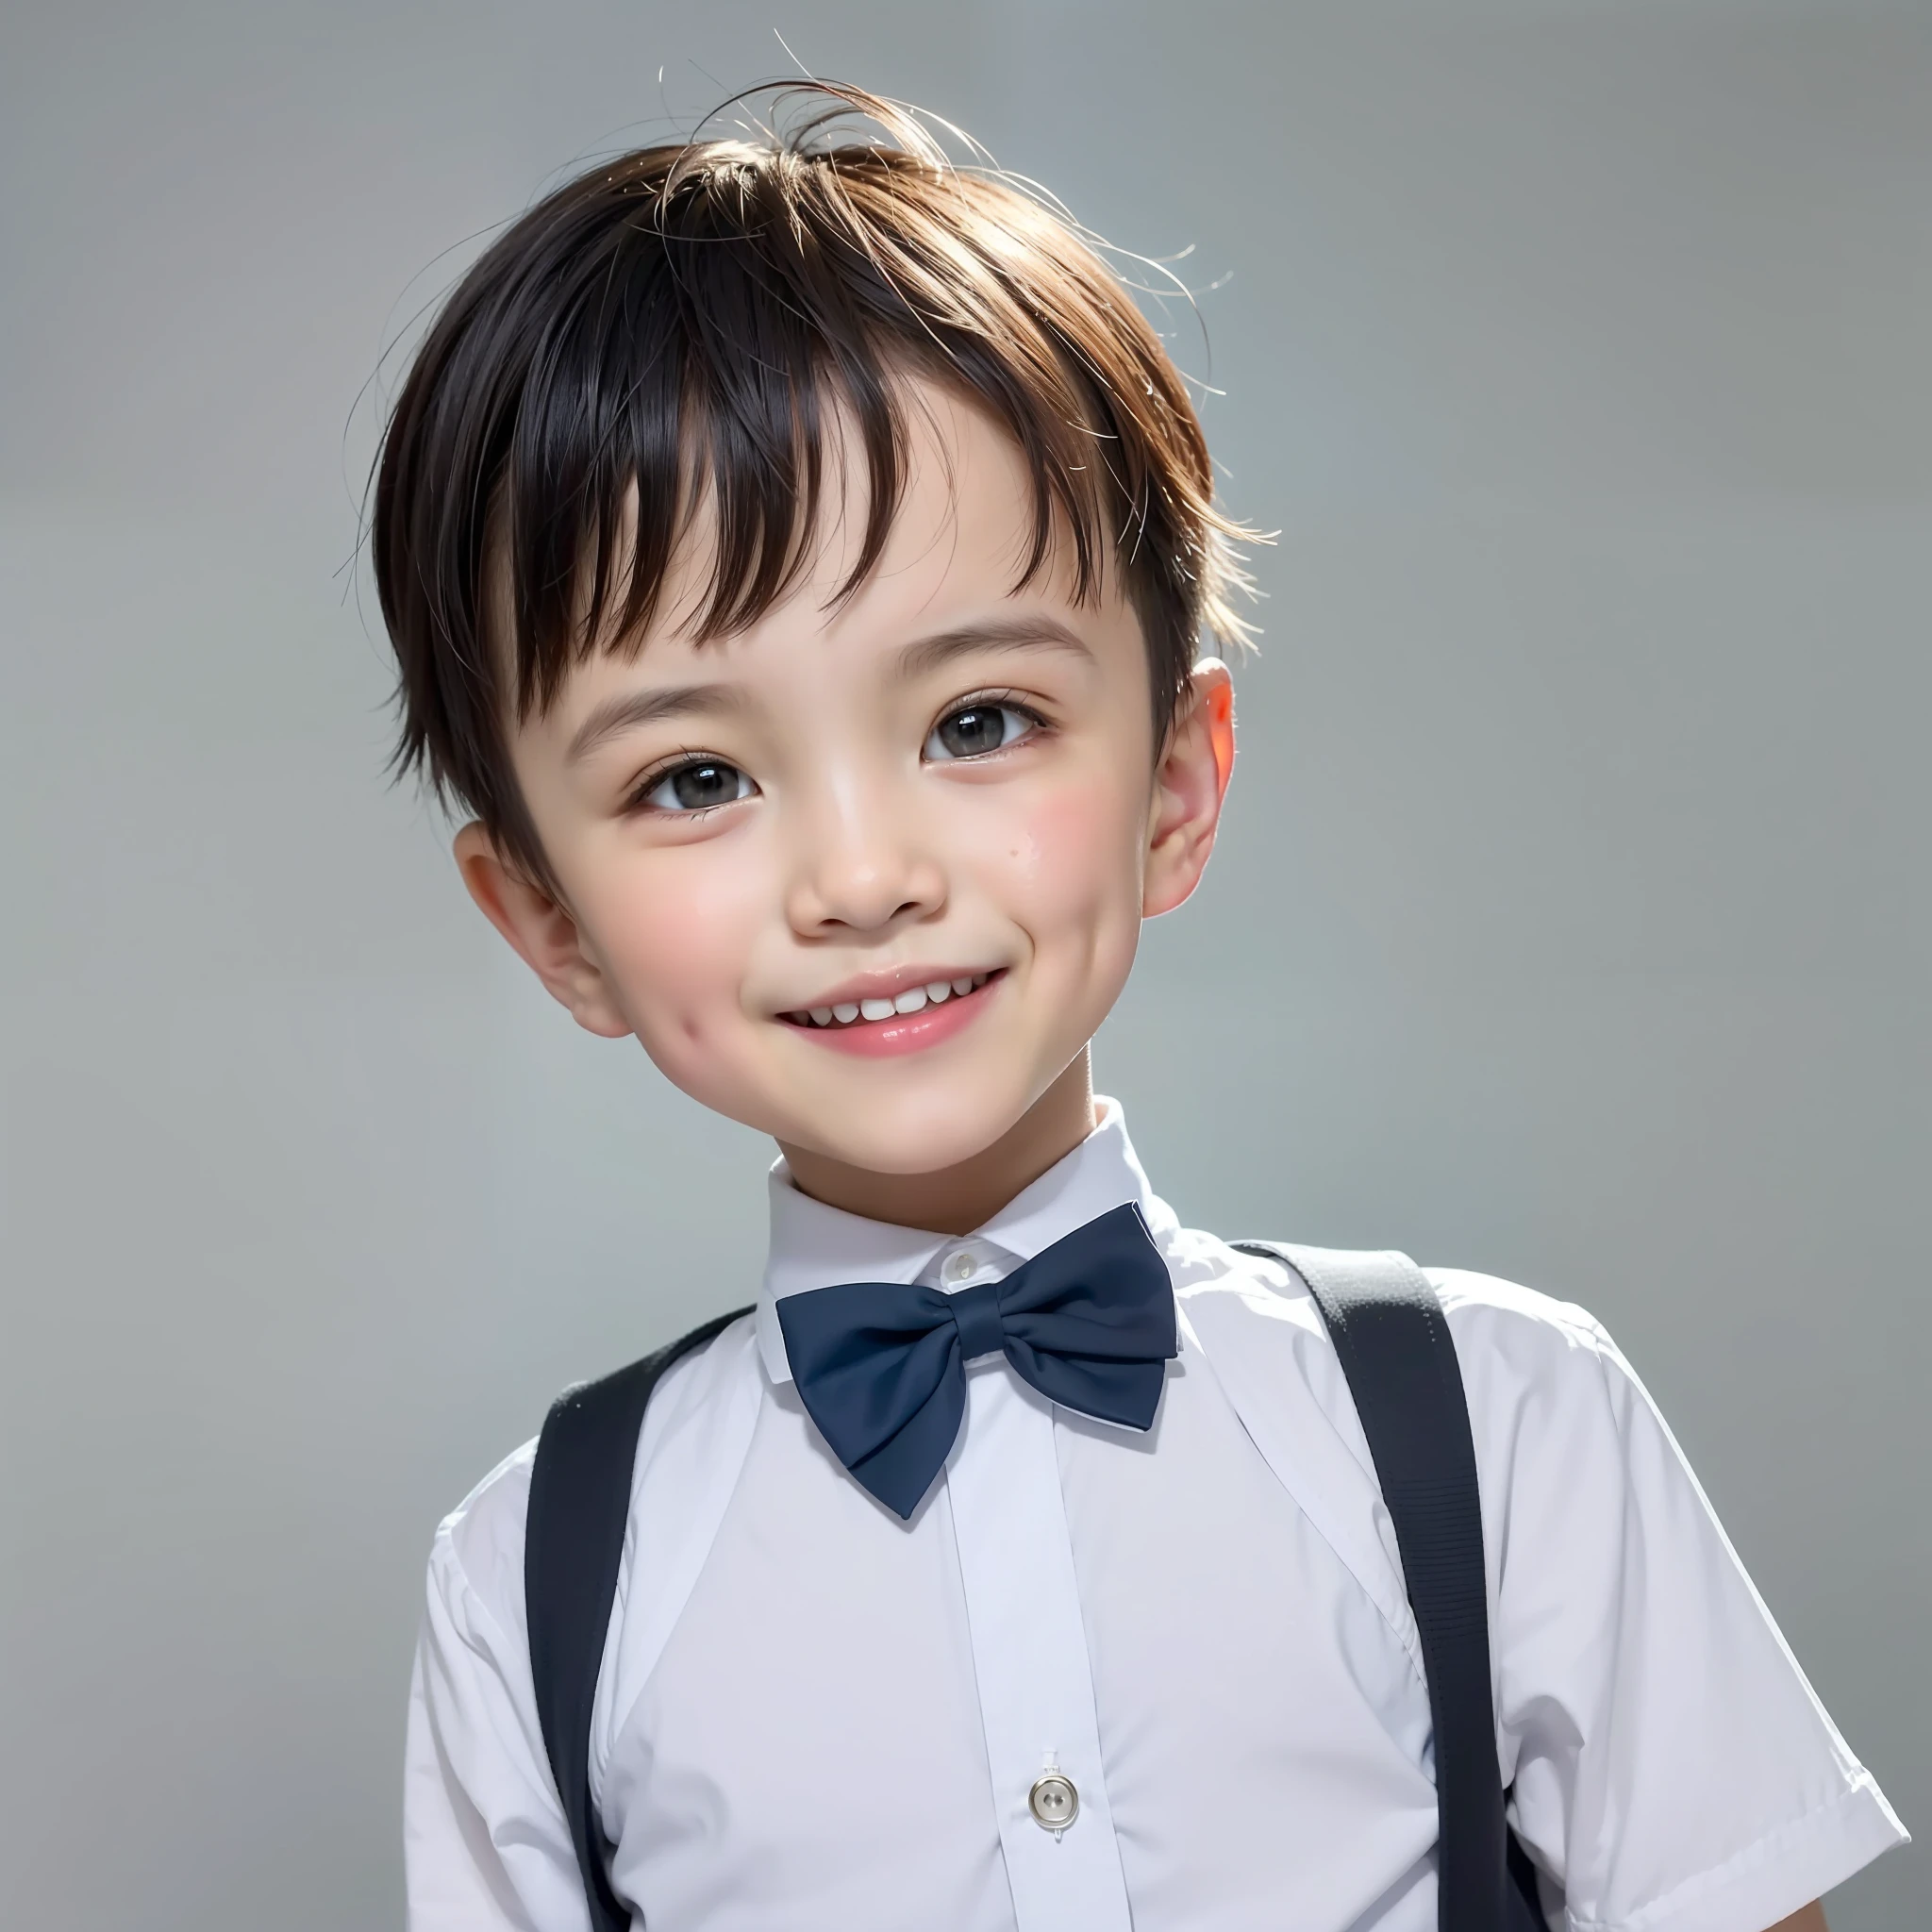 Современный стиль, белый фон, Фотография китайского детского удостоверения личности, красивый, улыбающийся мальчик, черные глаза, плоская голова, галстук-бабочка